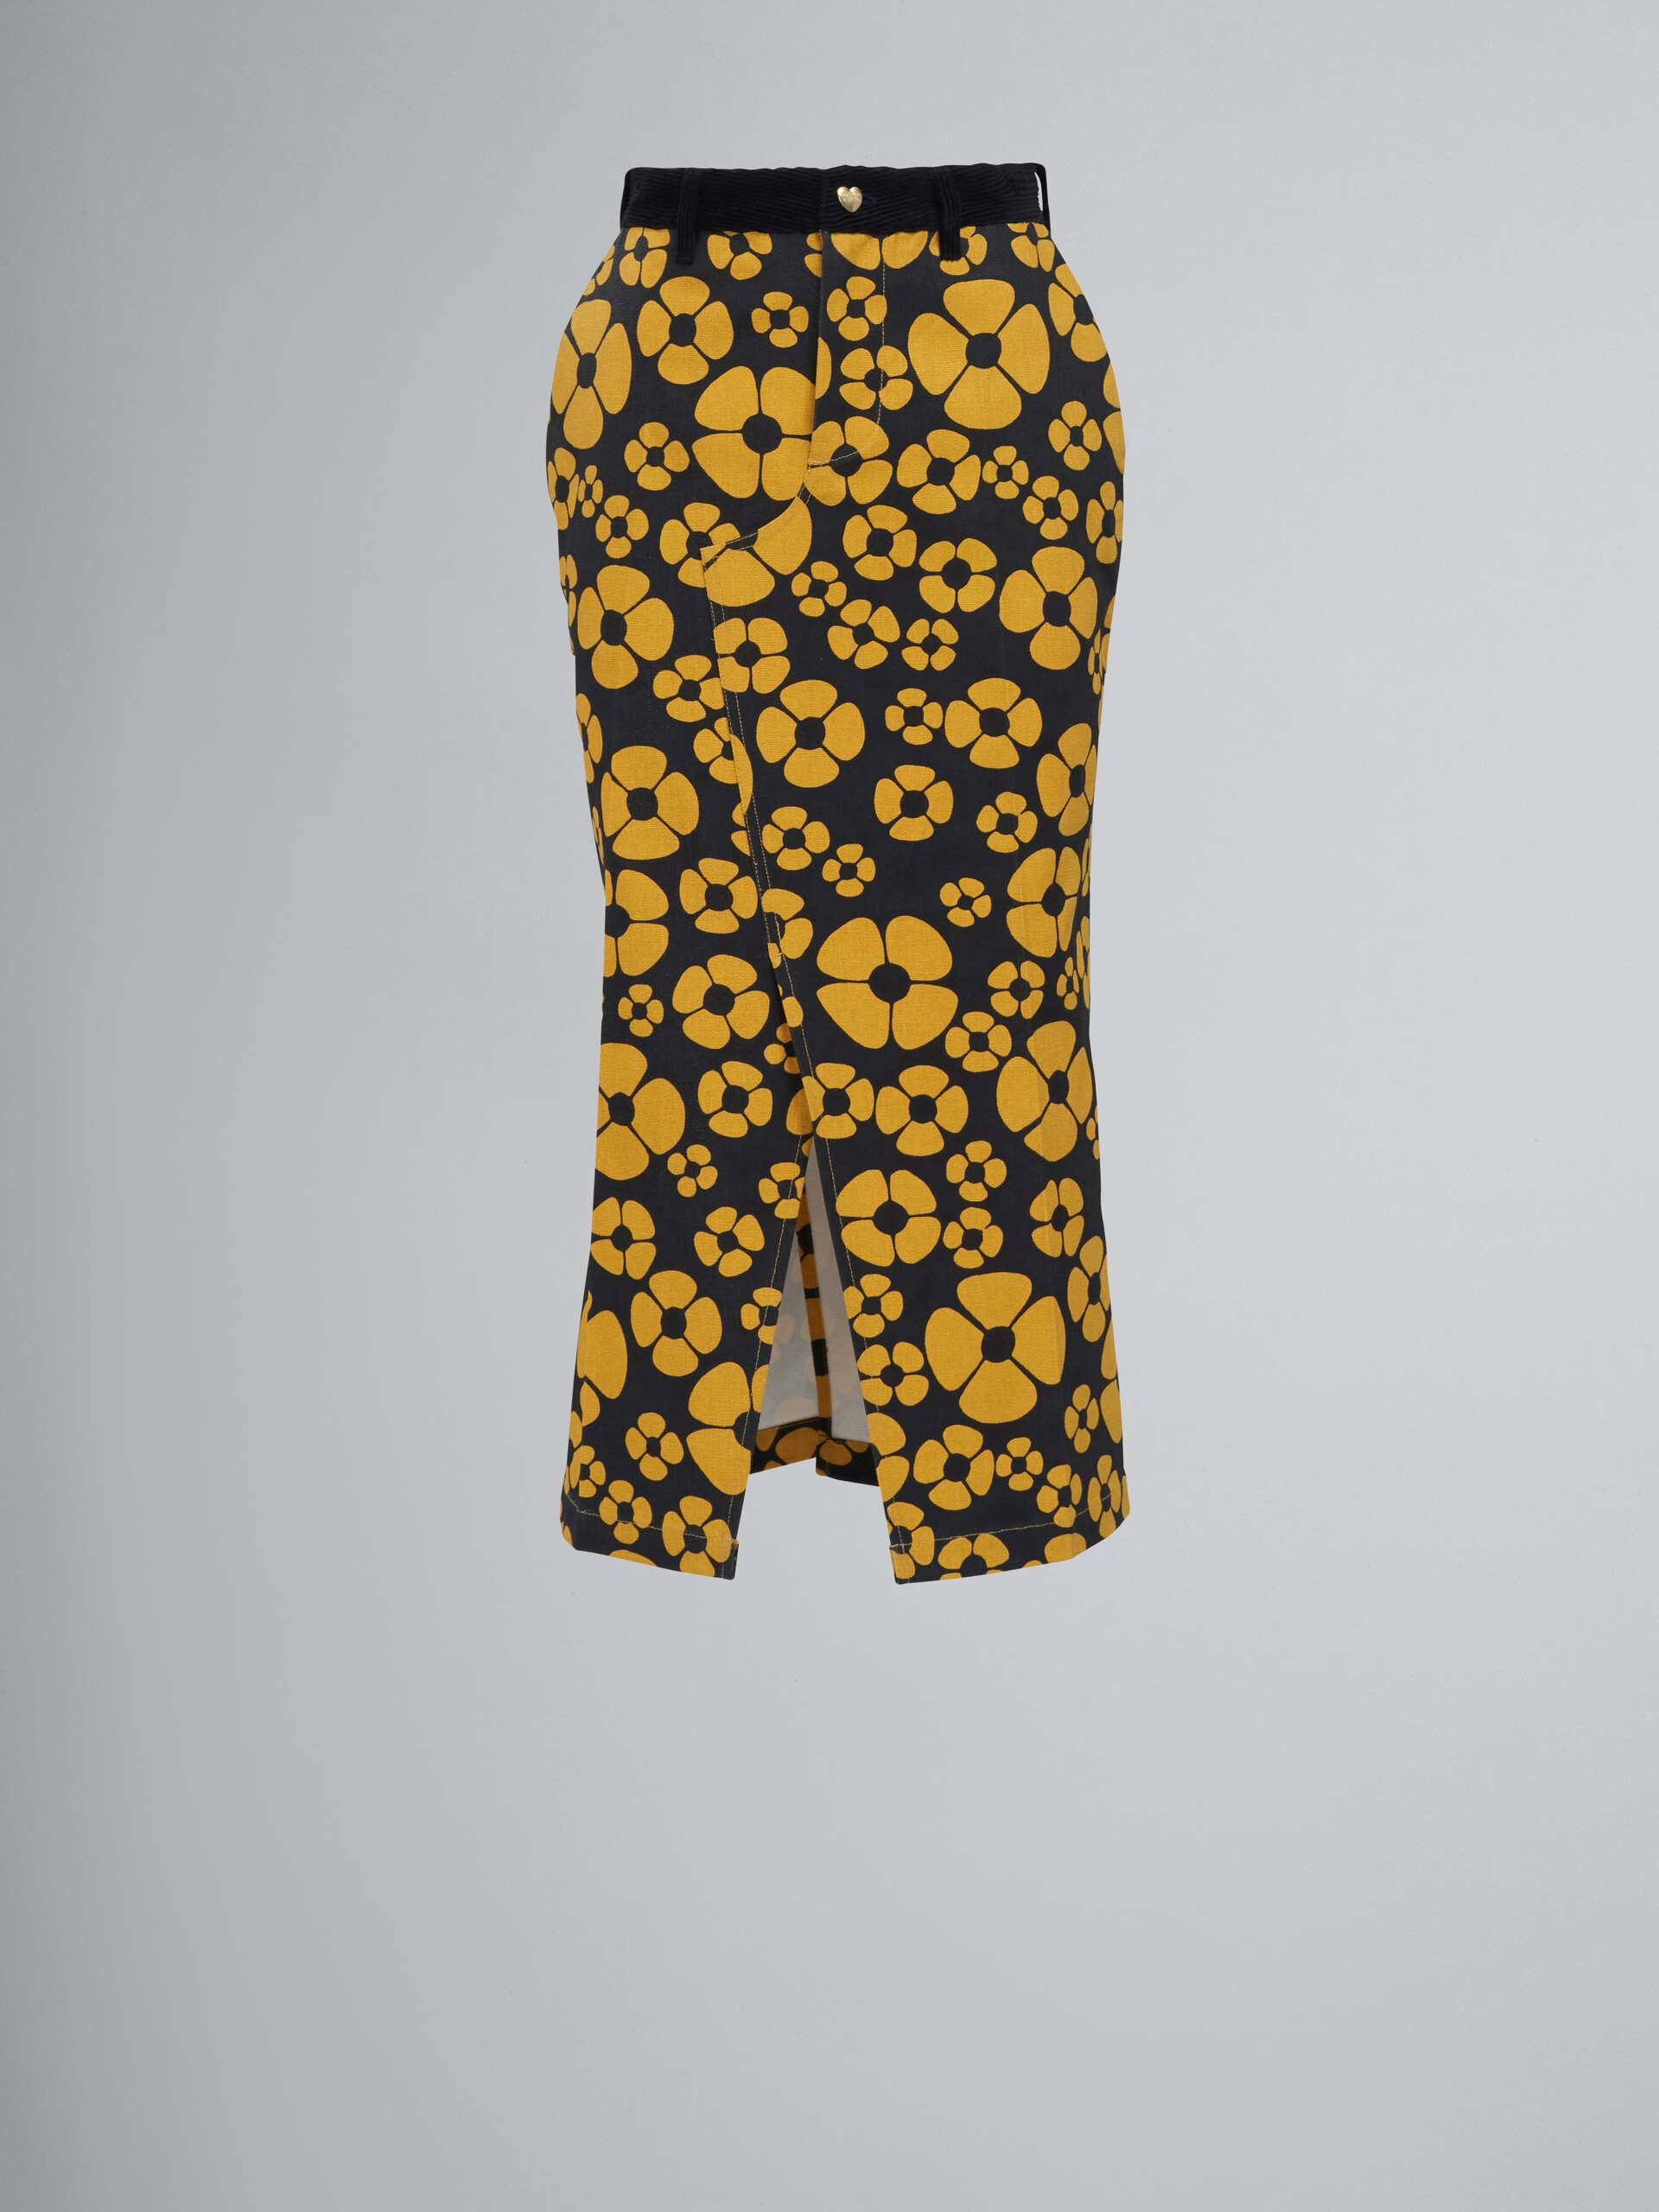 MARNI x CARHARTT WIP - yellow midi skirt - Skirts - Image 1